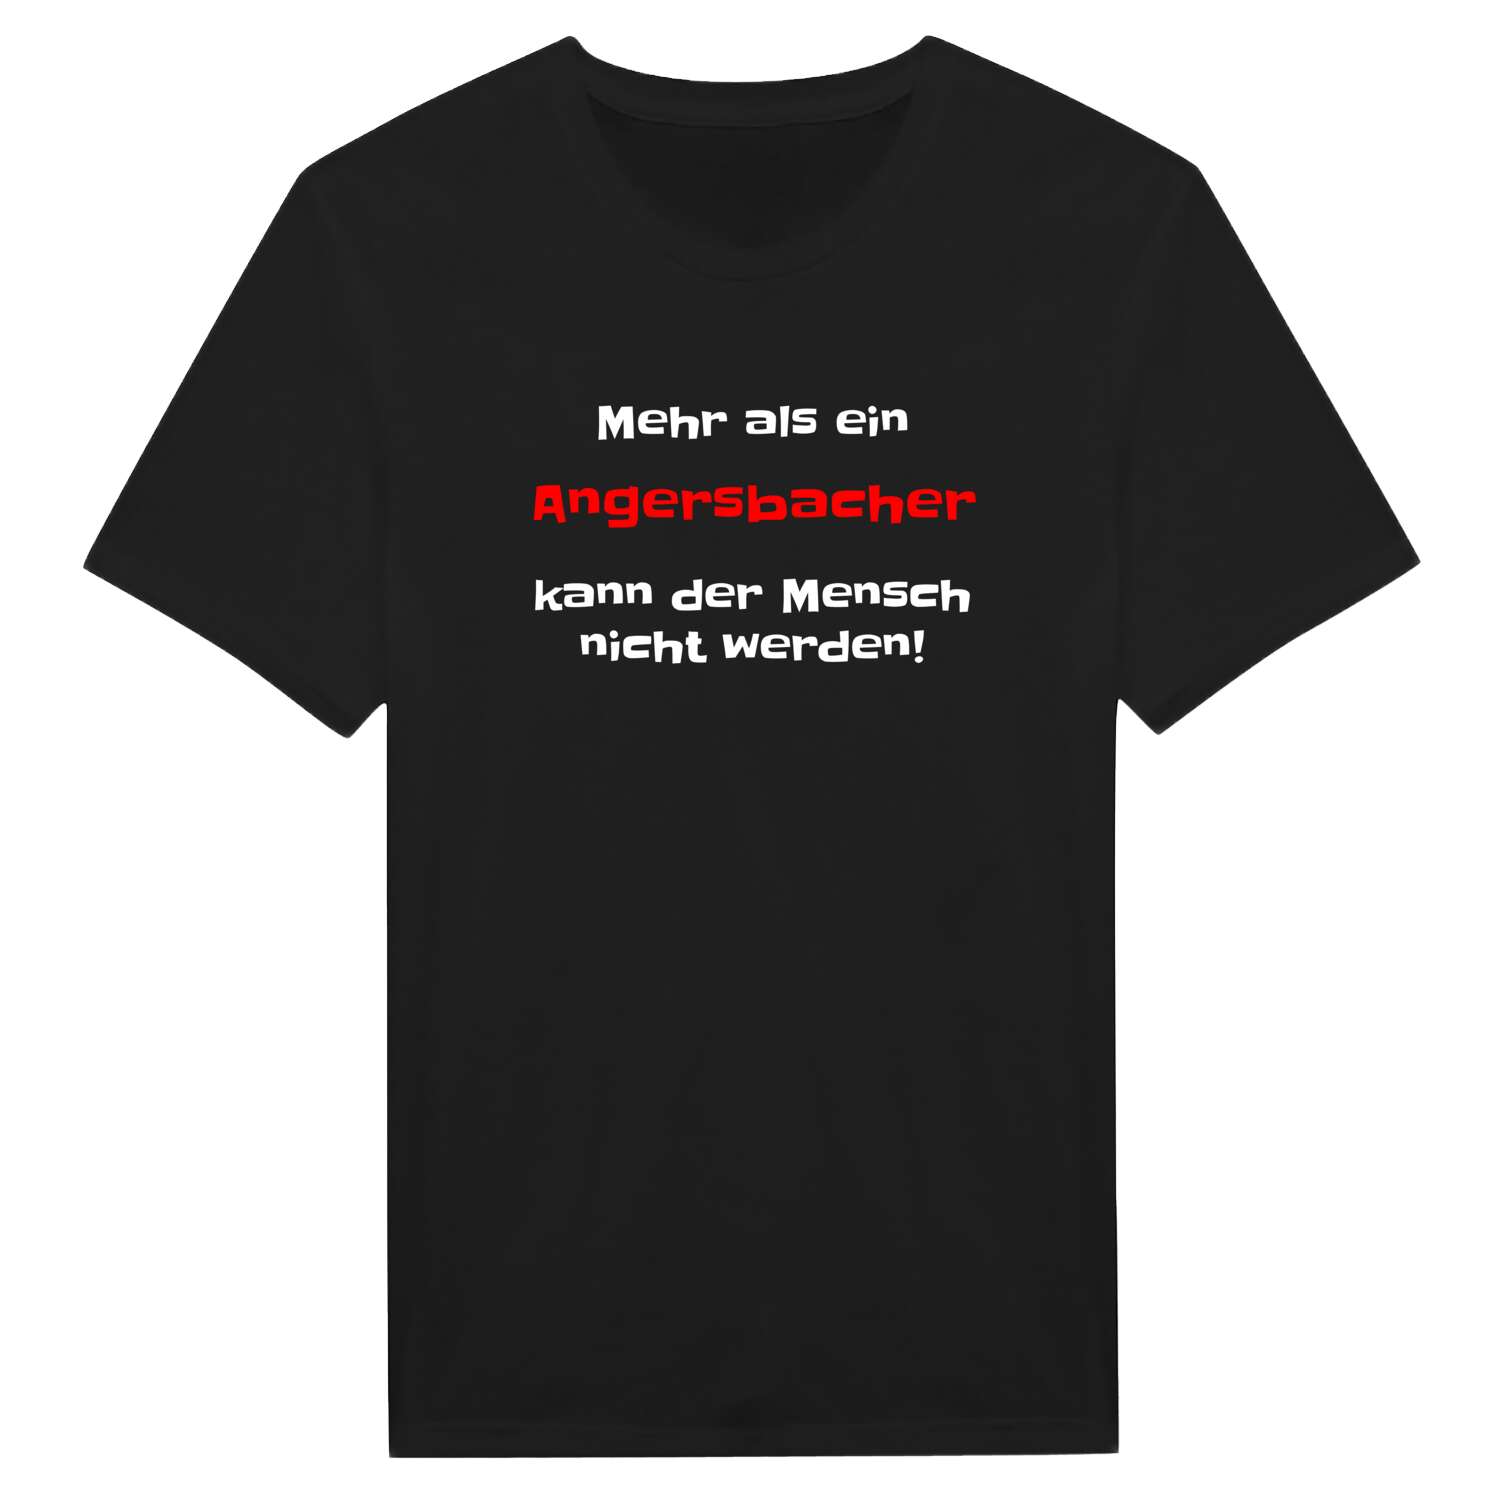 Angersbach T-Shirt »Mehr als ein«